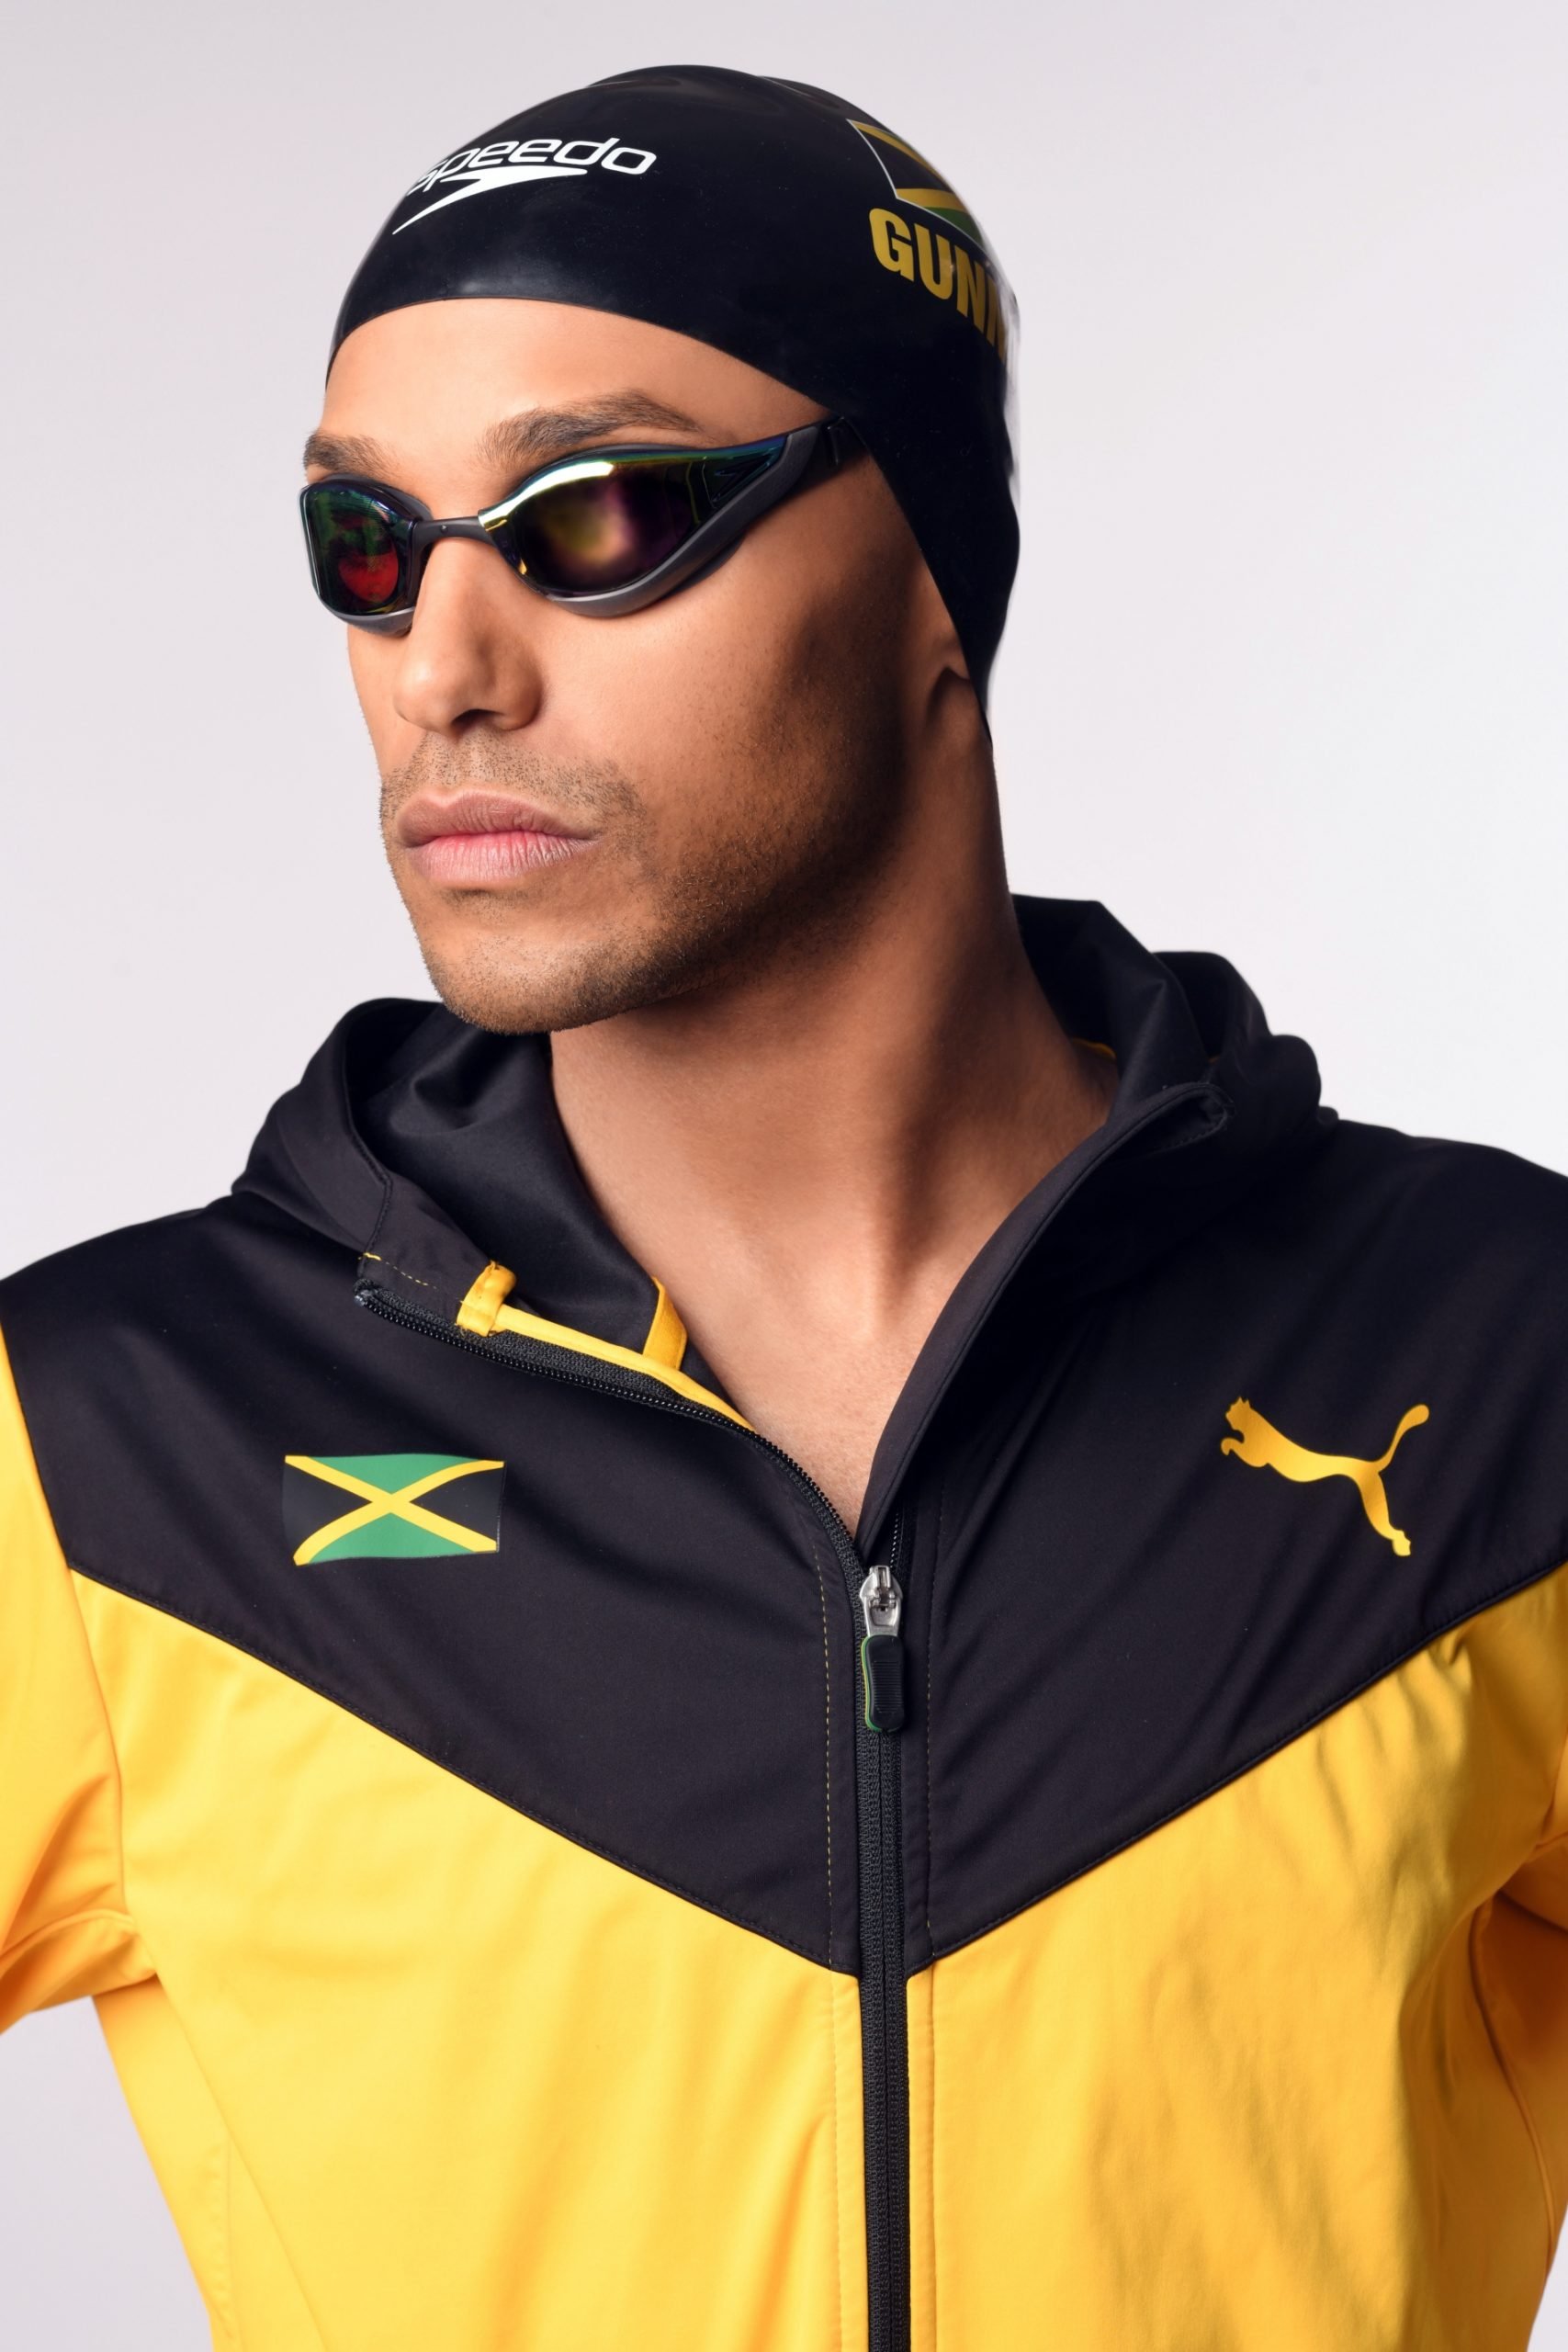 Speedo athlete in Jamaica gear